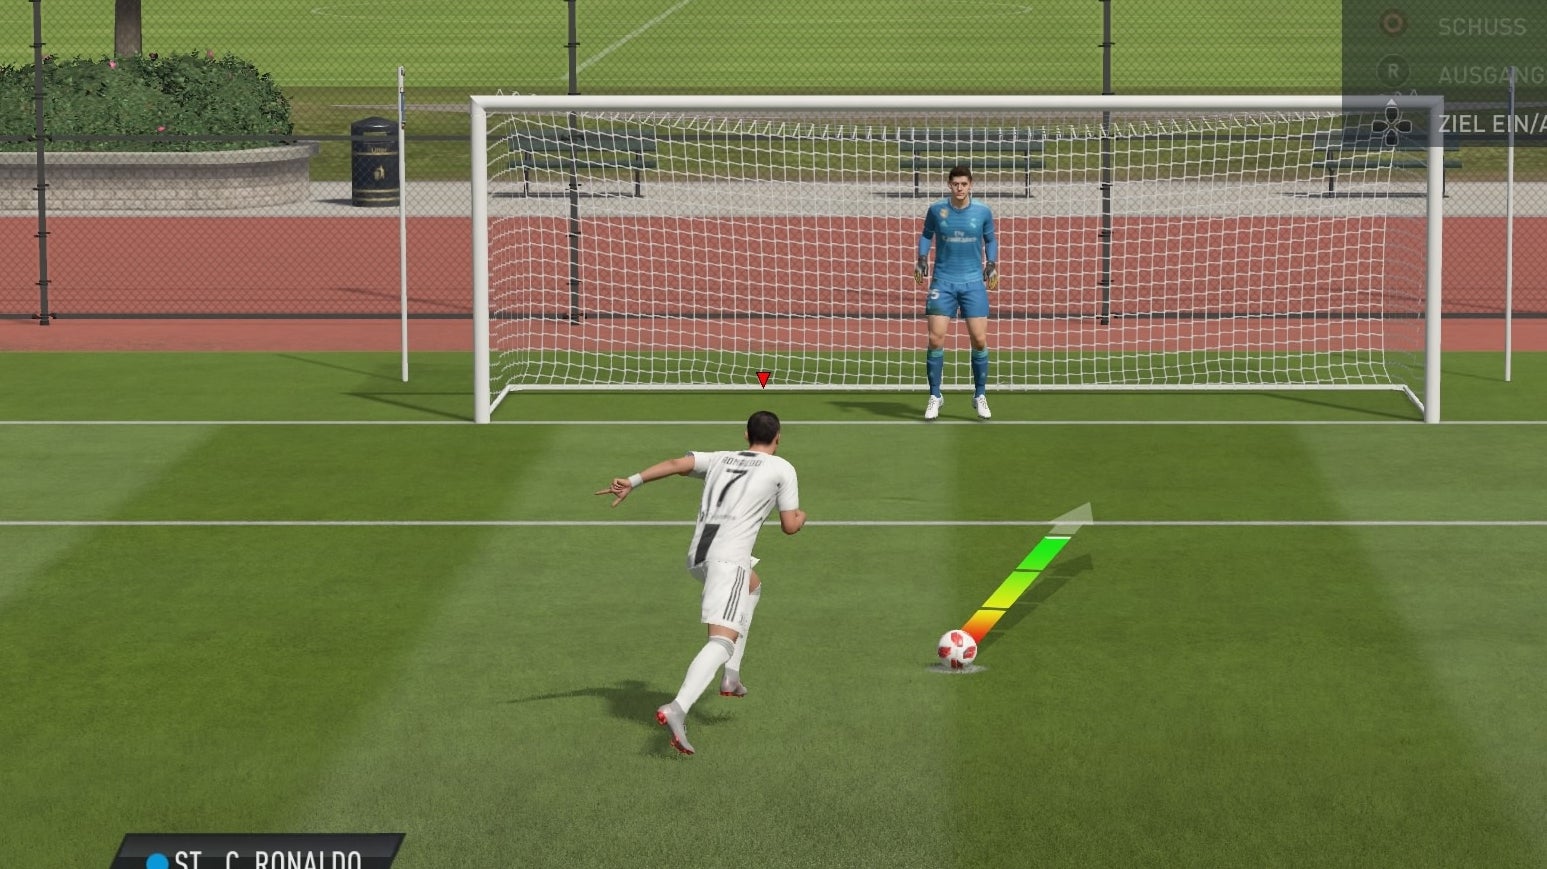 Bilder zu FIFA 19: Elfmeterschießen und halten - So klappt's